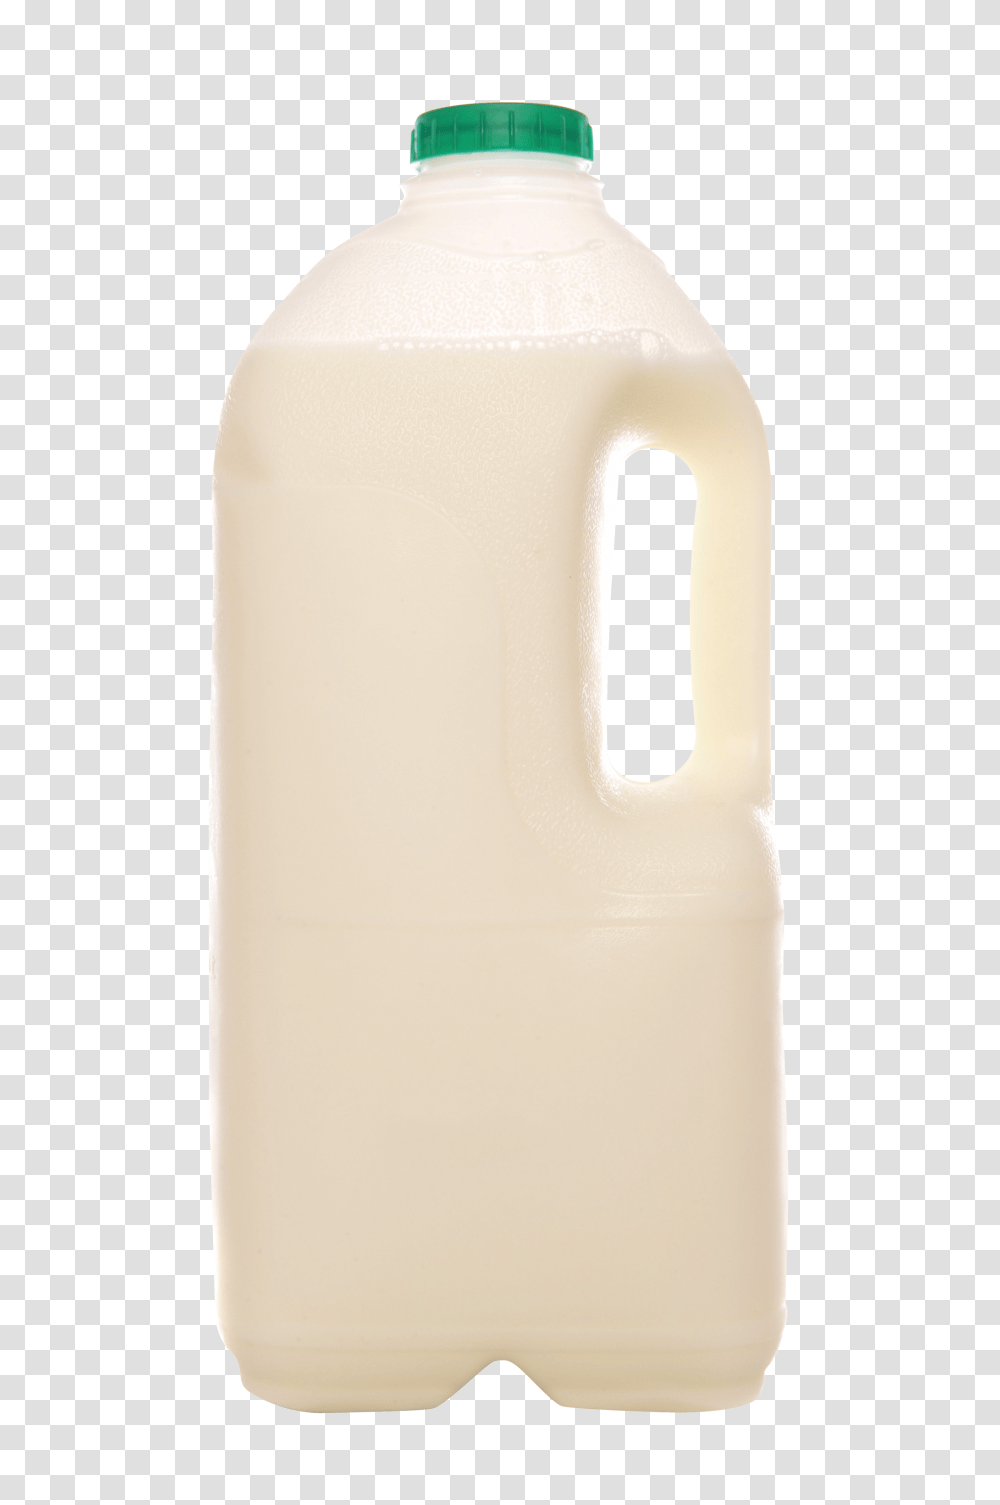 Milk Can Image, Beverage, Drink, Shaker, Bottle Transparent Png